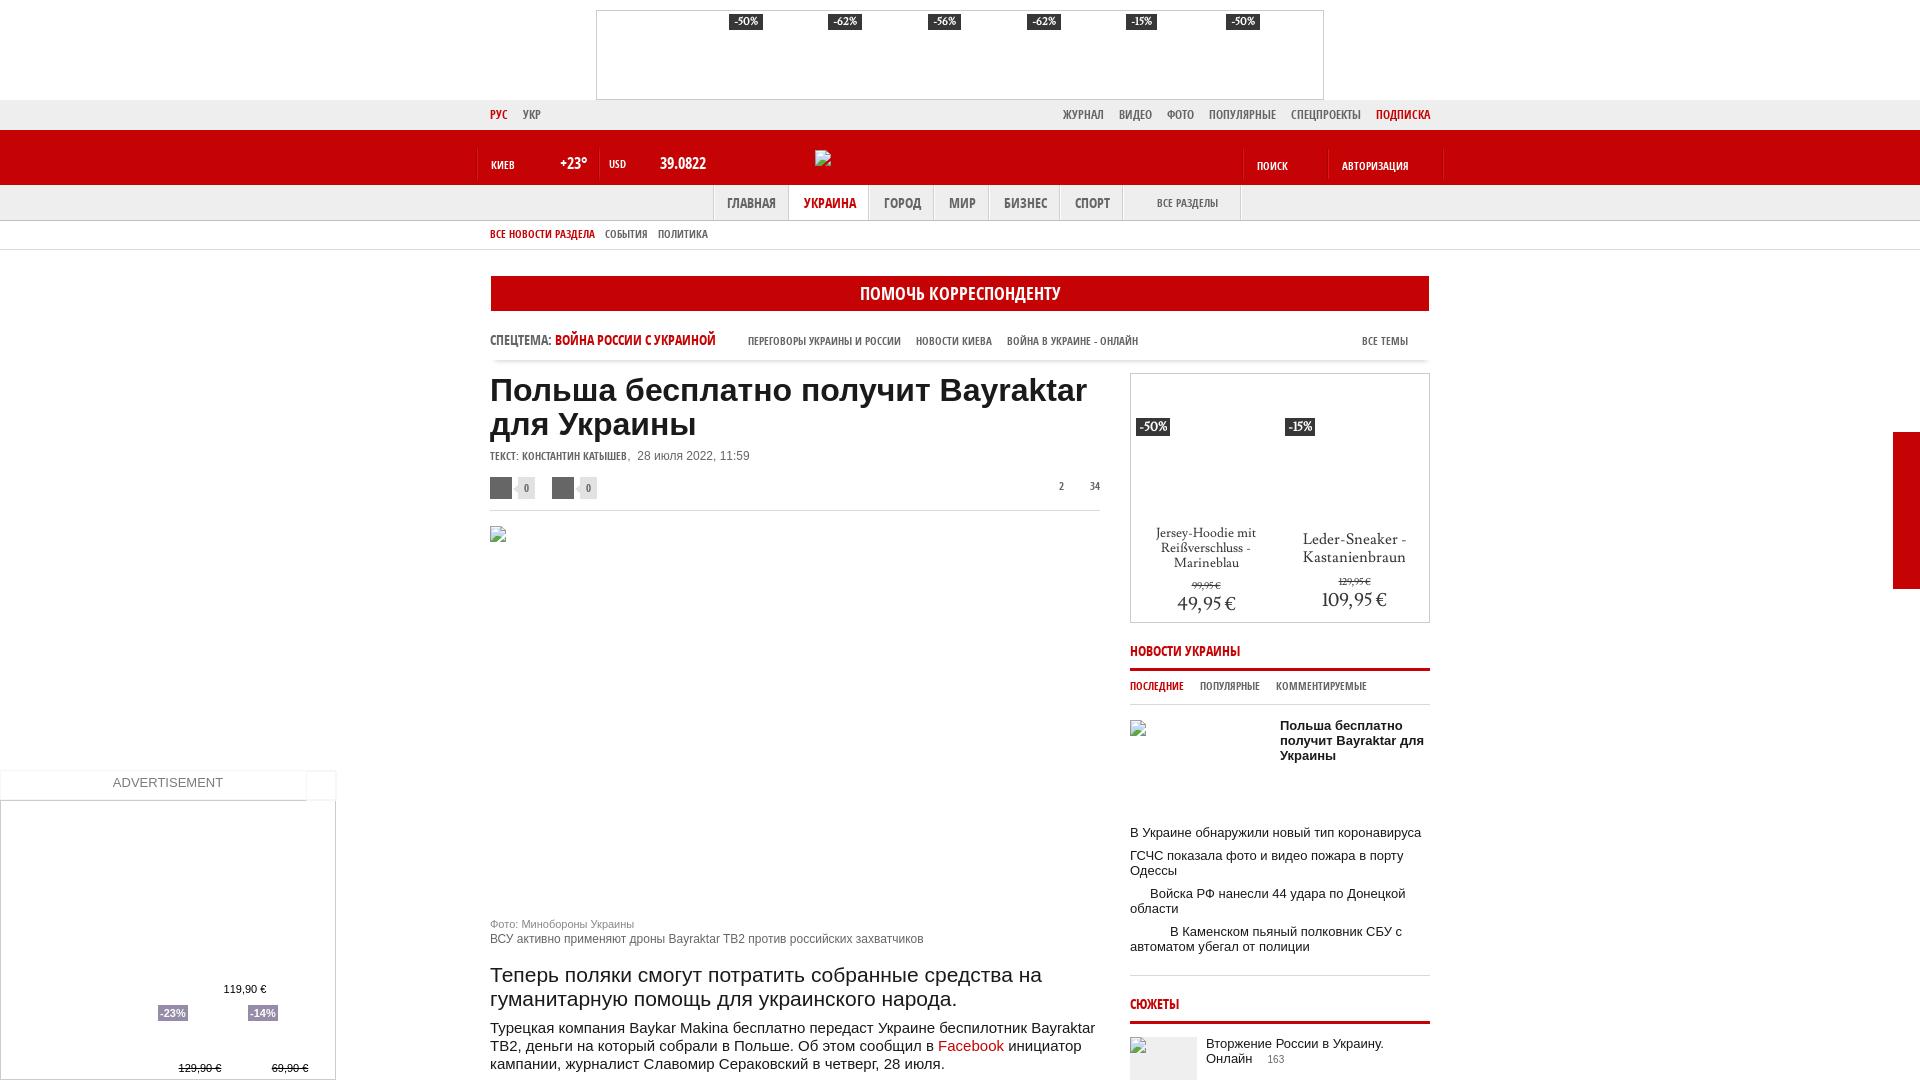 Polska otrzymuje za darmo Bayraktar dla Ukrainy |  Wiadomości Bota